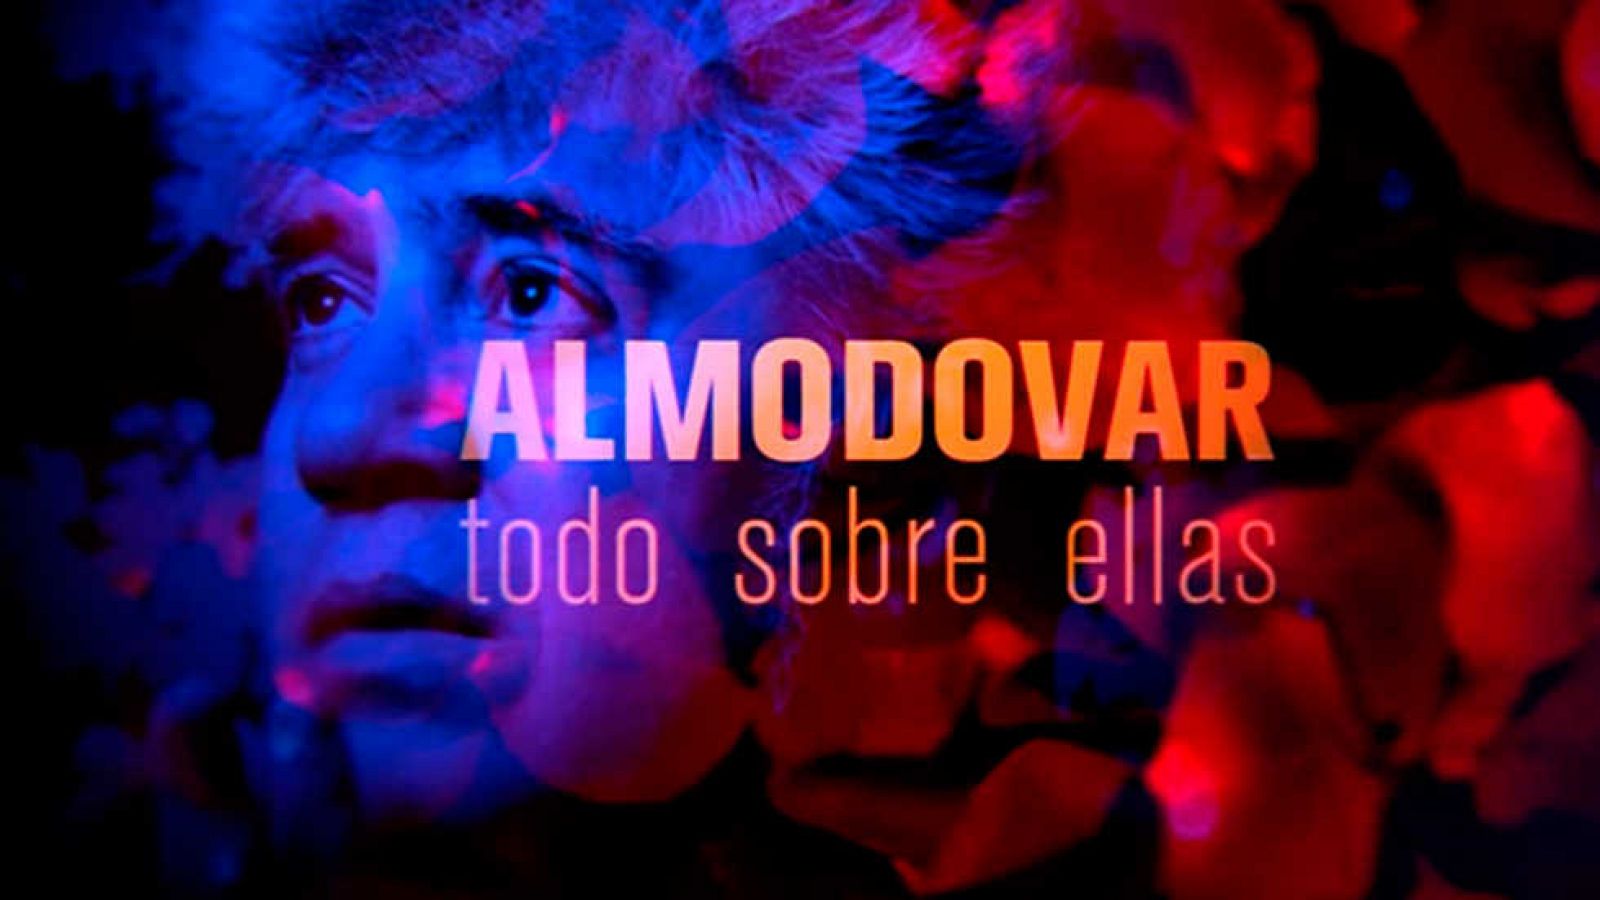 El documental - Almodóvar, todo sobre ellas: Almodóvar por sus musas